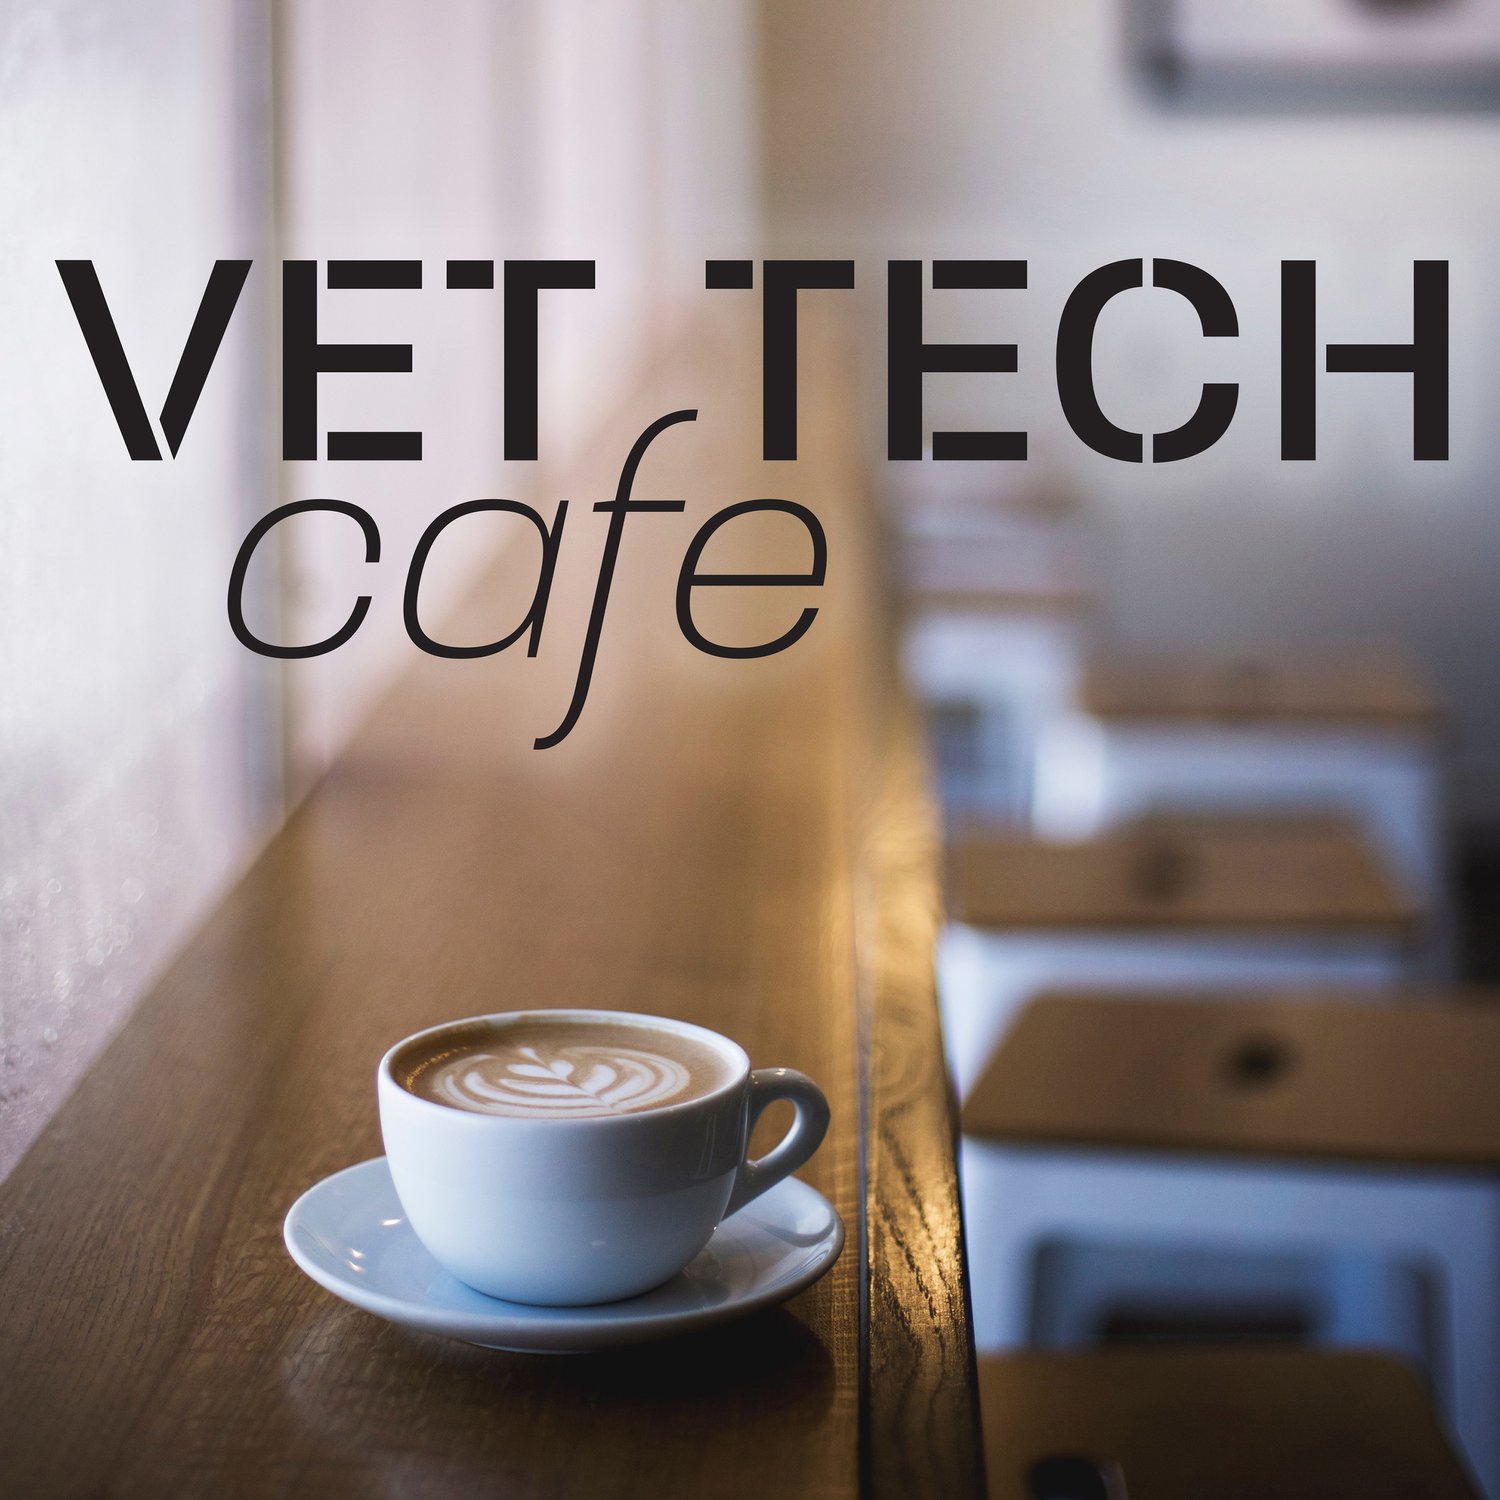 Vet Tech Cafe Podcast